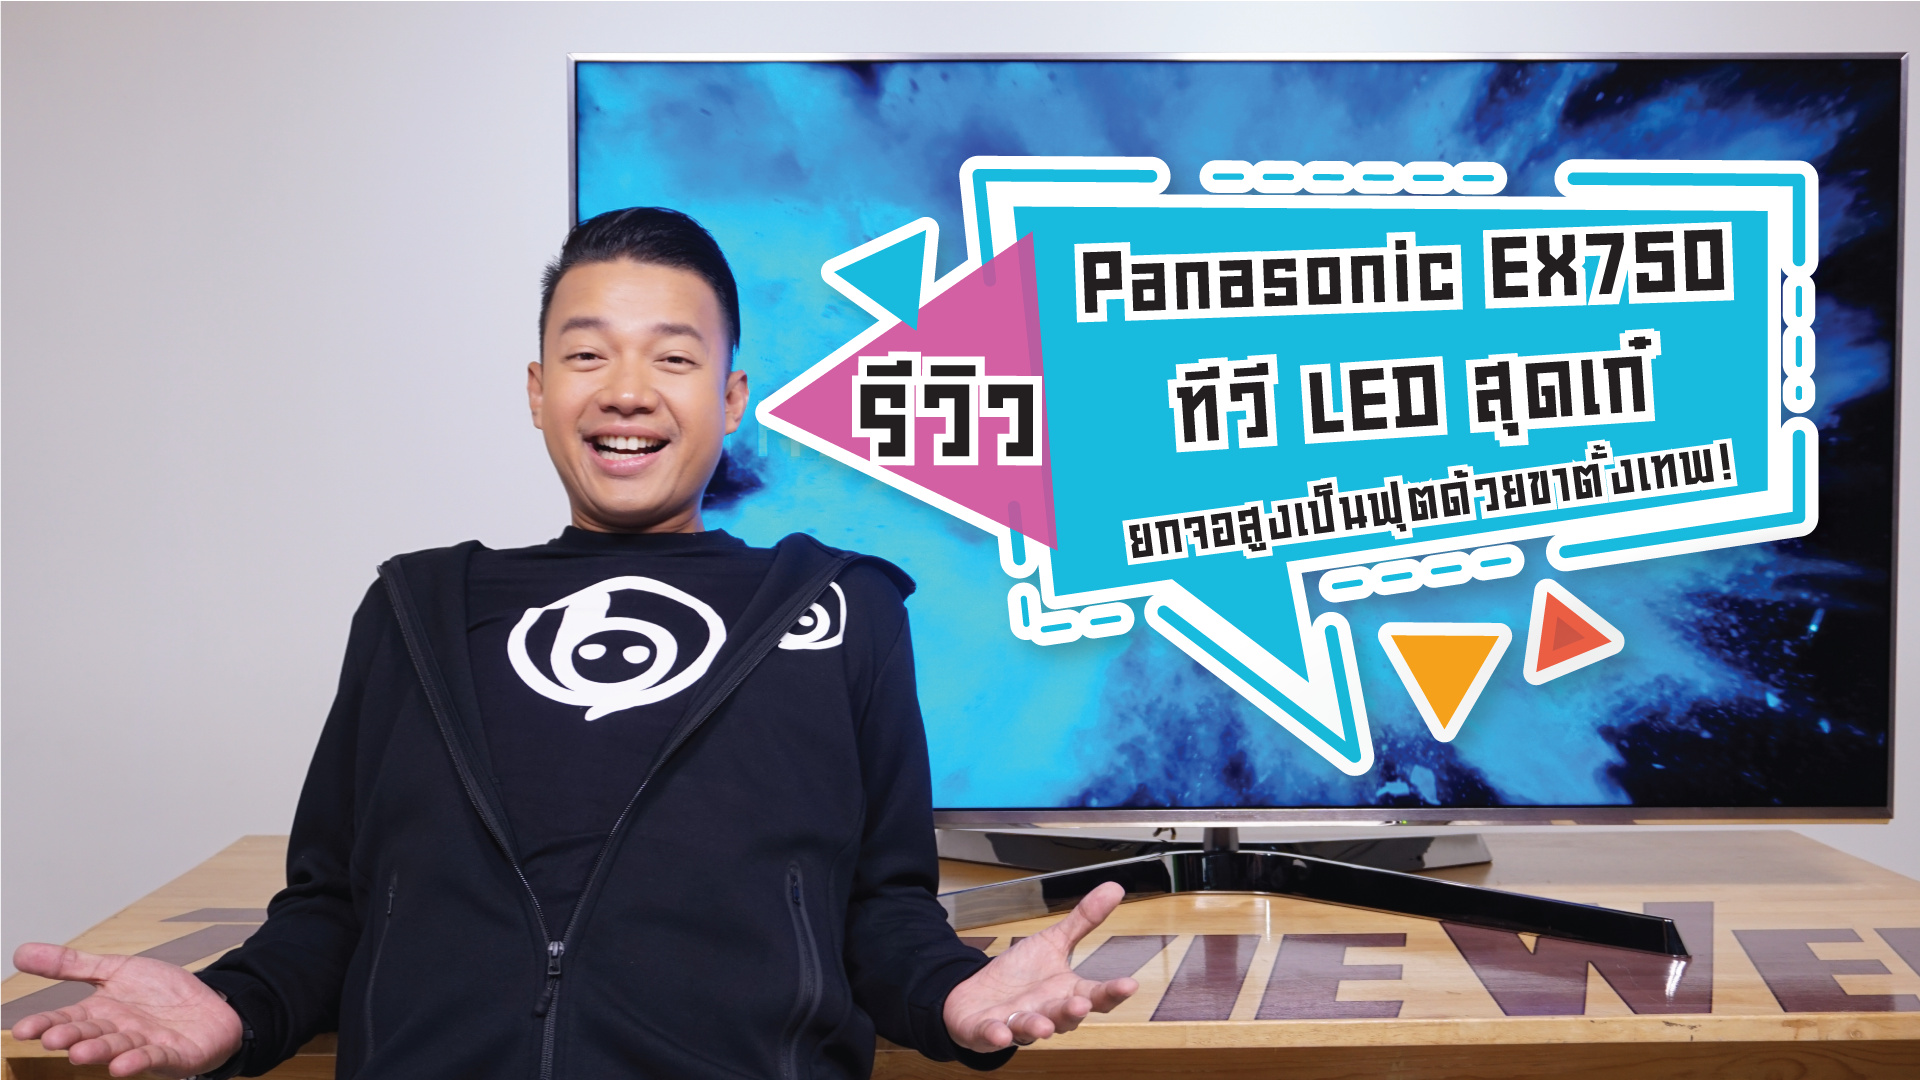 รีวิว Panasonic EX750 ทีวี LED ตัวท็อปสุดเก๋ ยกจอสูงได้เป็นฟุต!